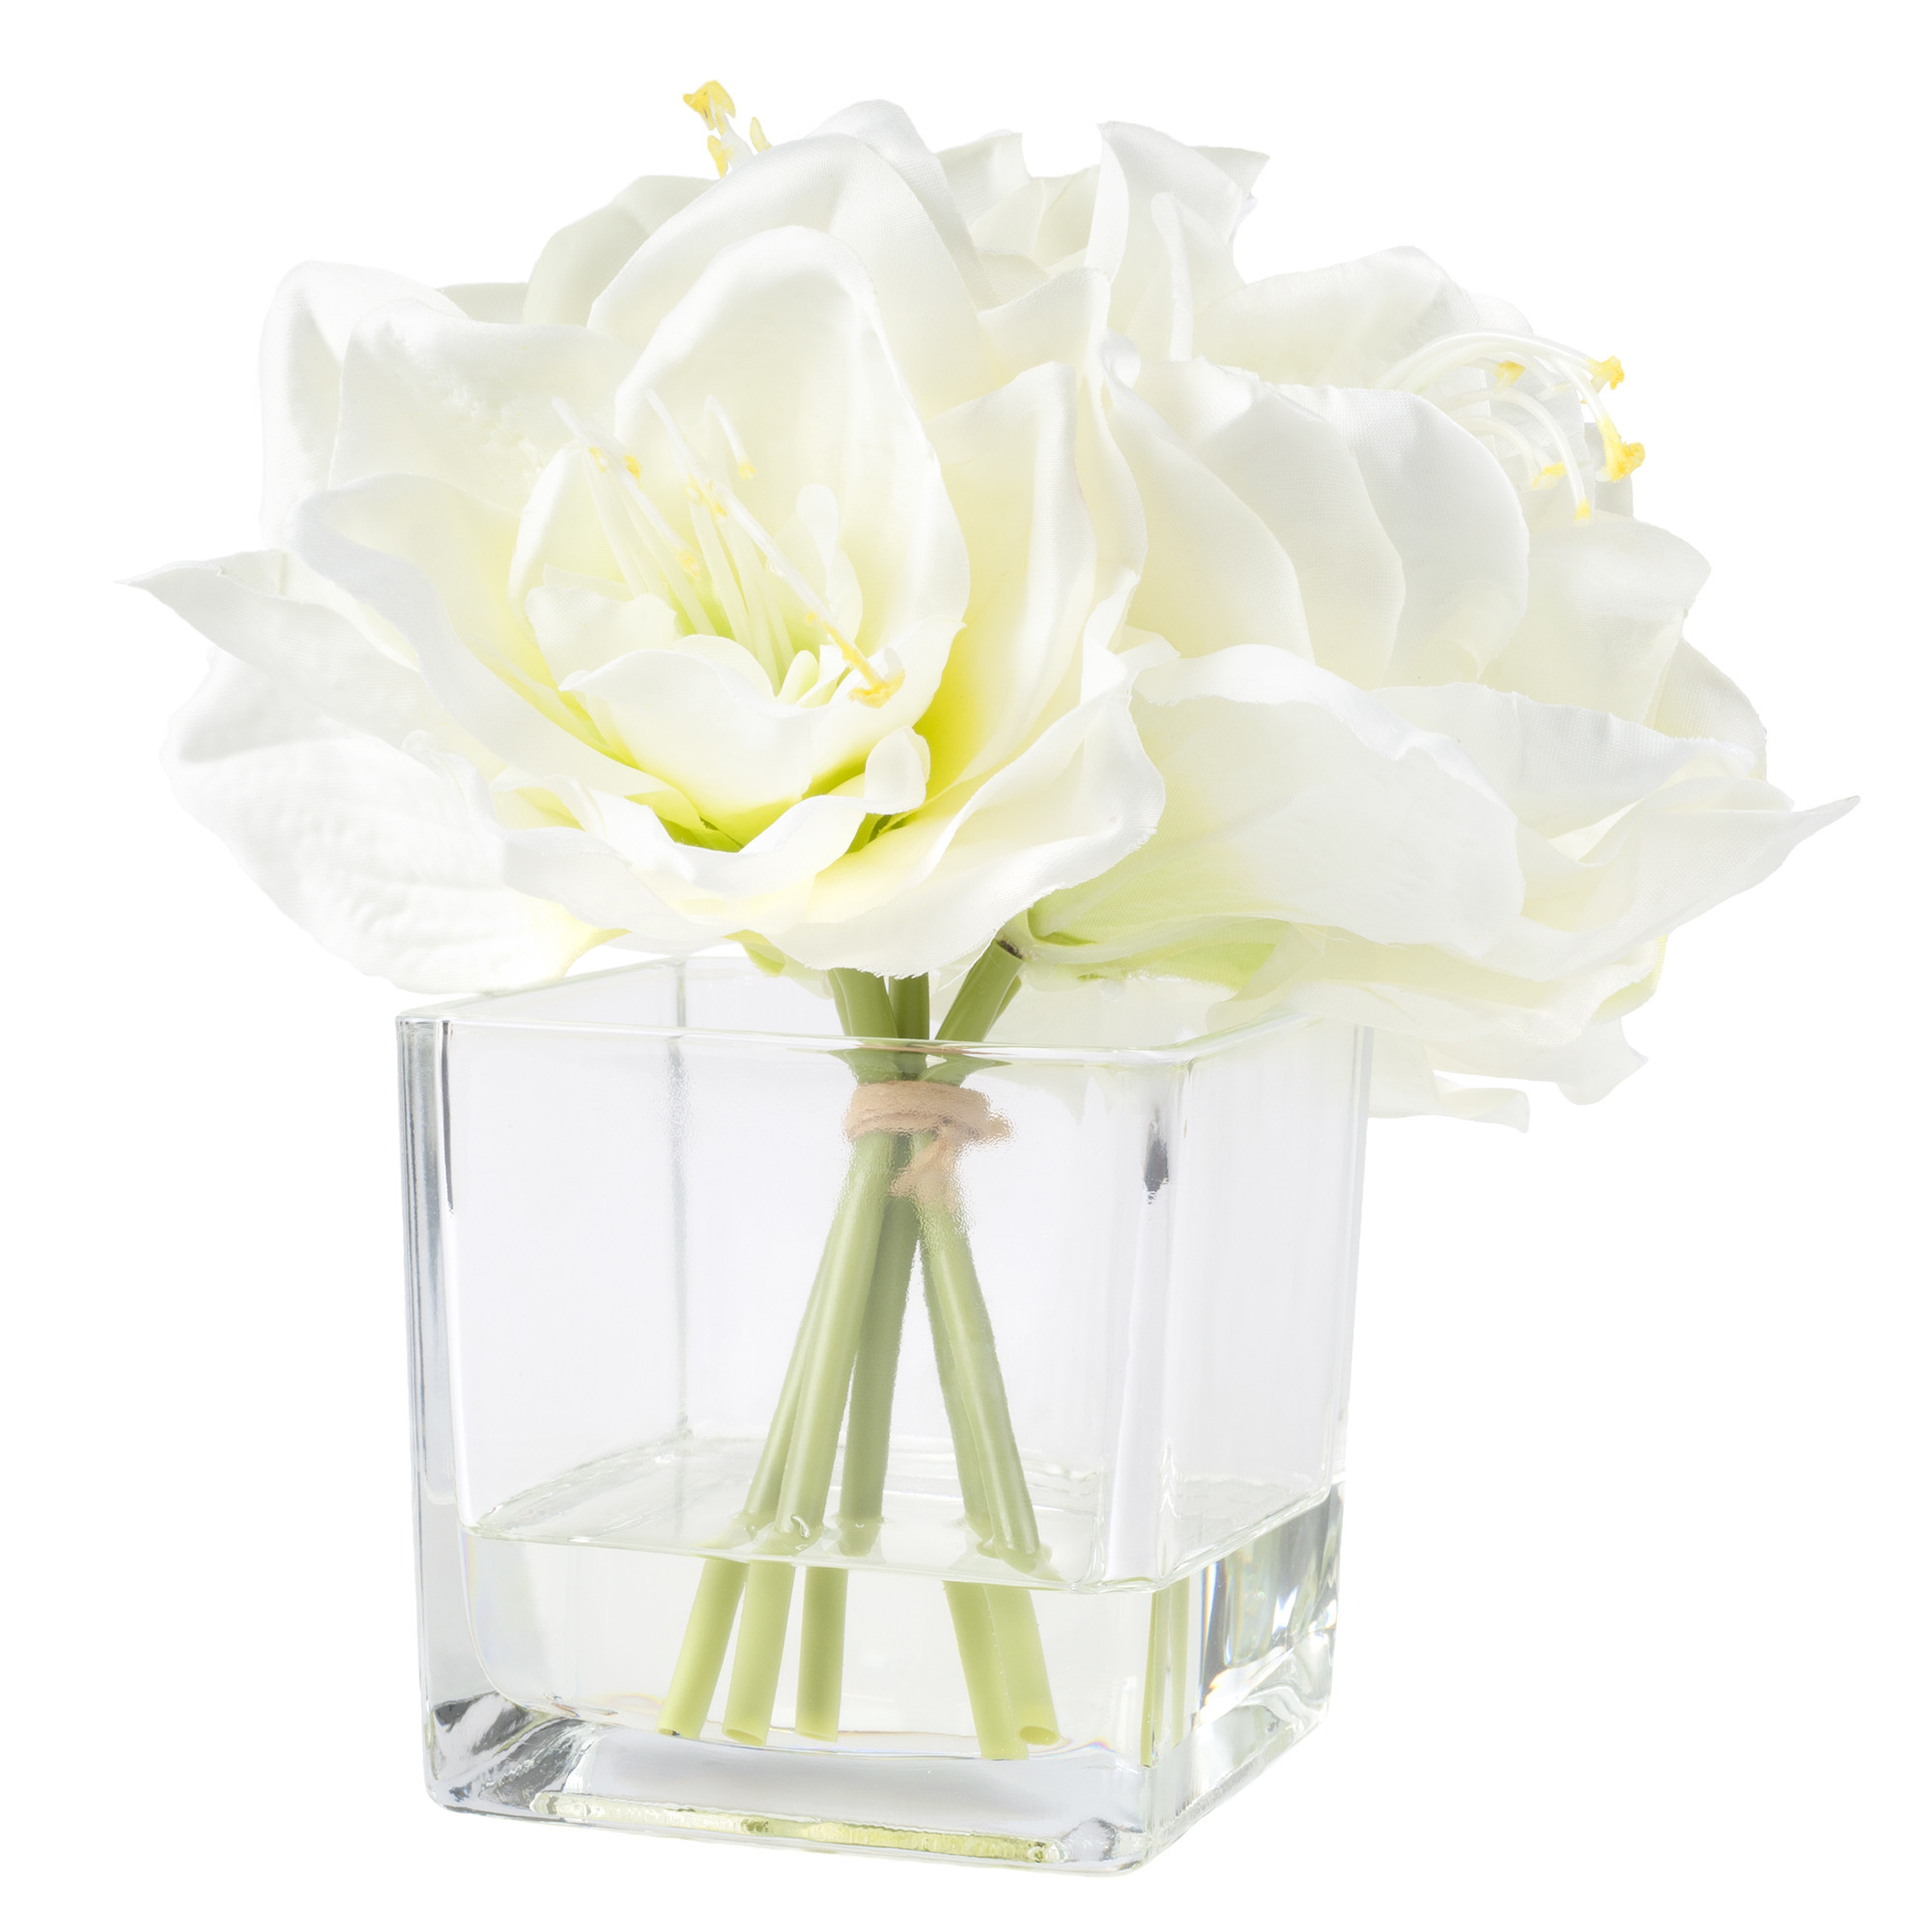 Lily Arrangement in Glass Vase - Wayfair